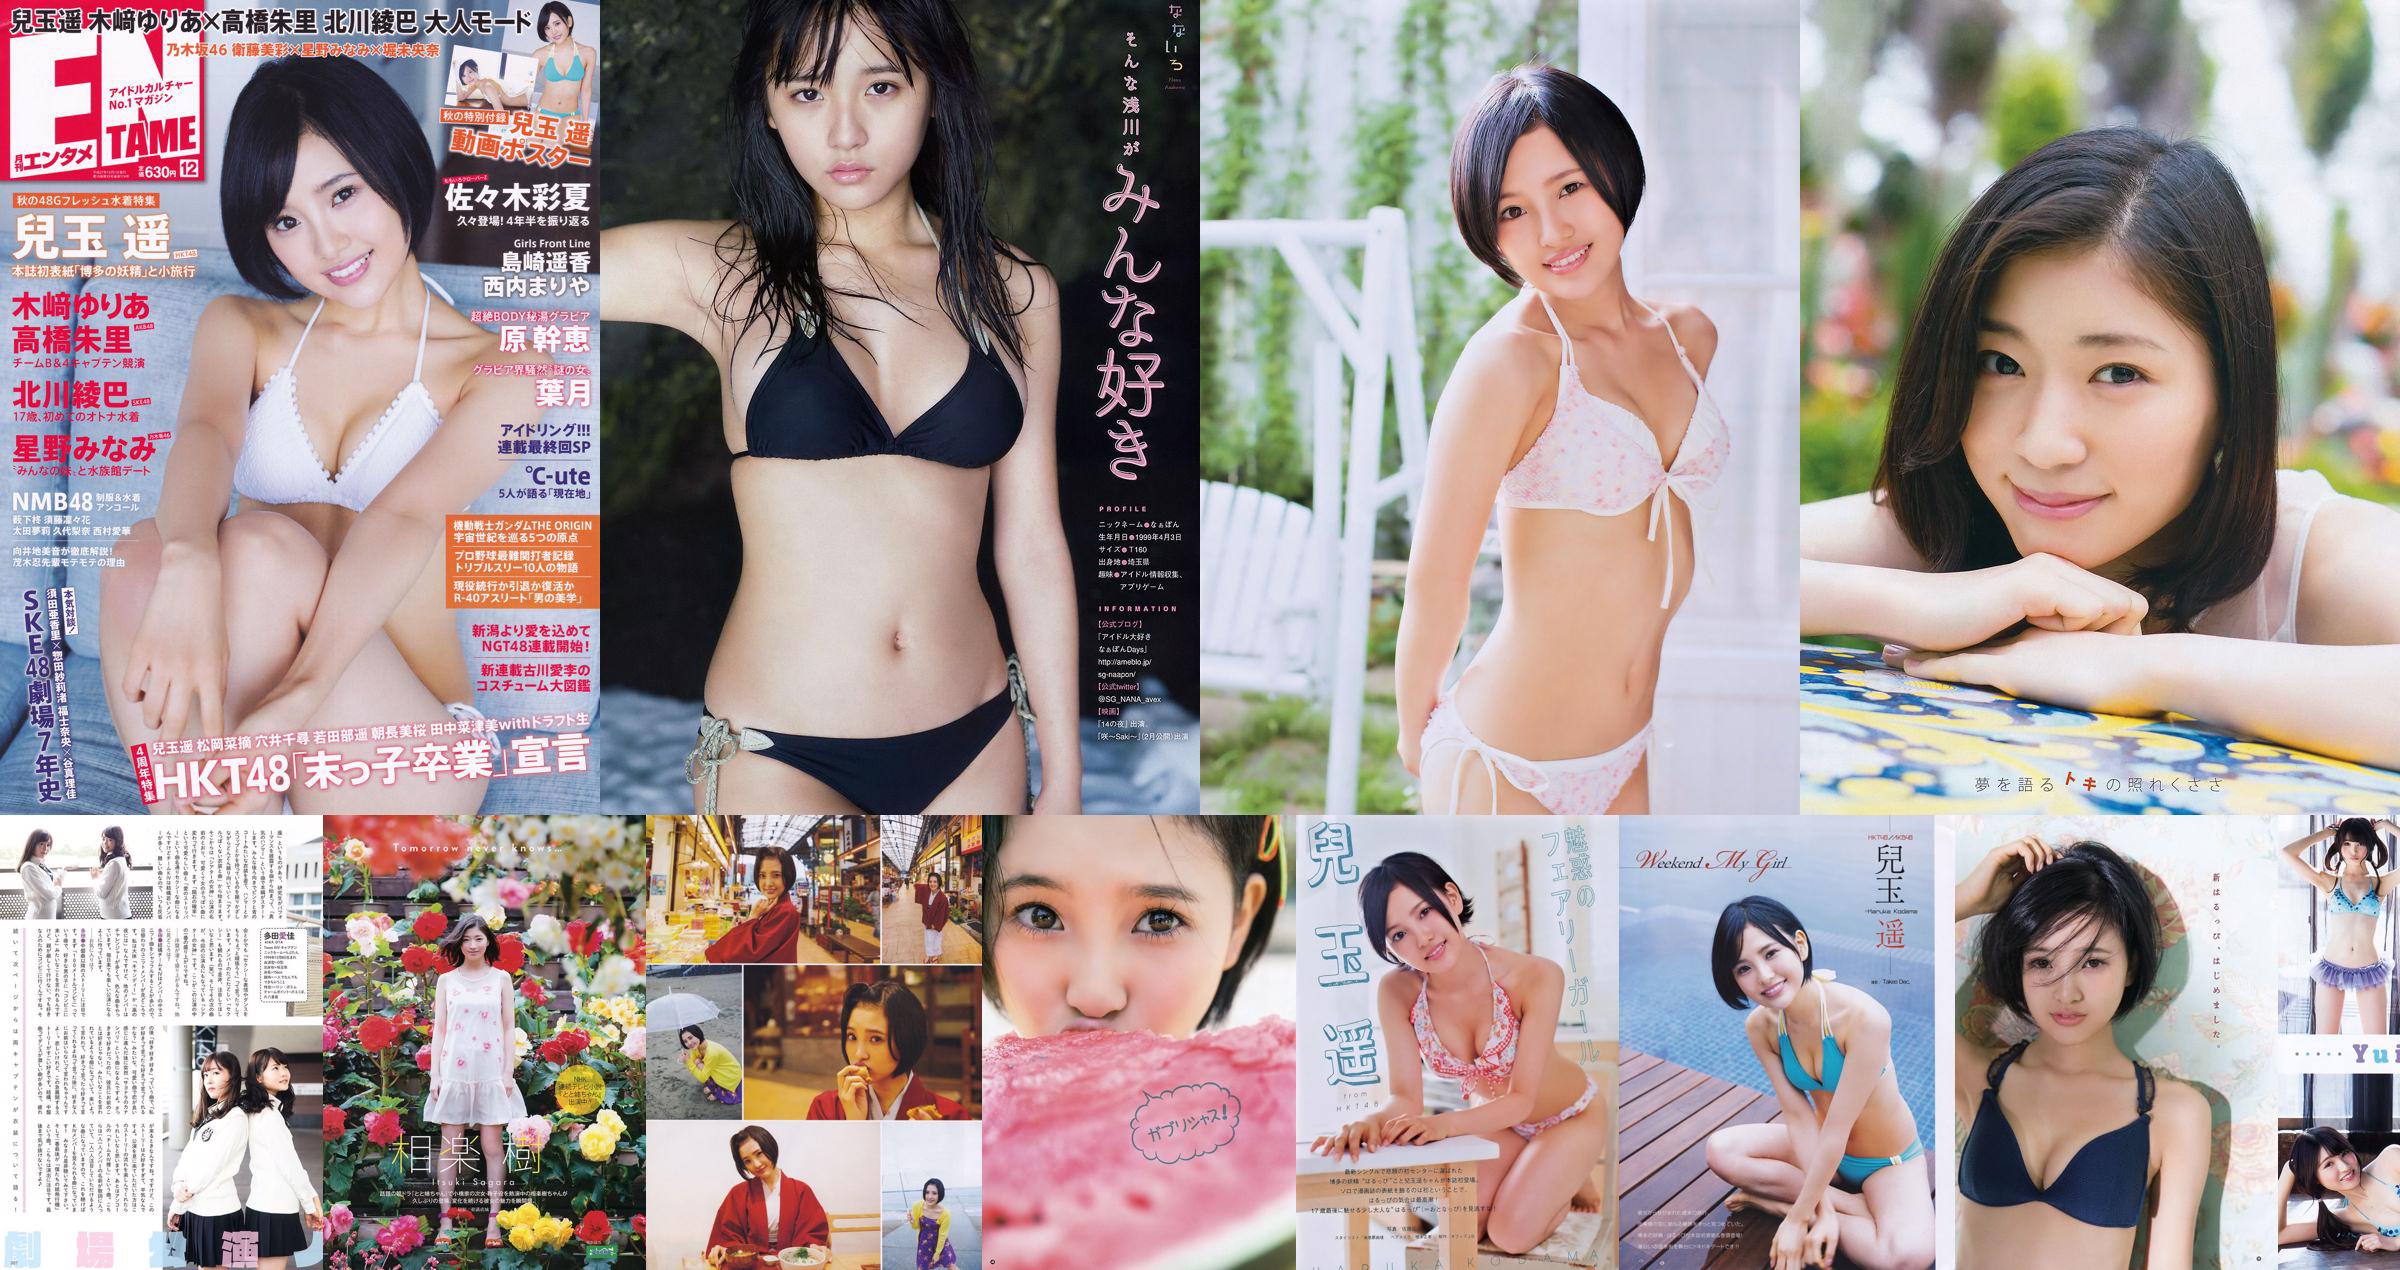 [Jeune Champion] Haruka Kodama Saya Kataoka 2015 Photographie n ° 17 No.6bc14f Page 1